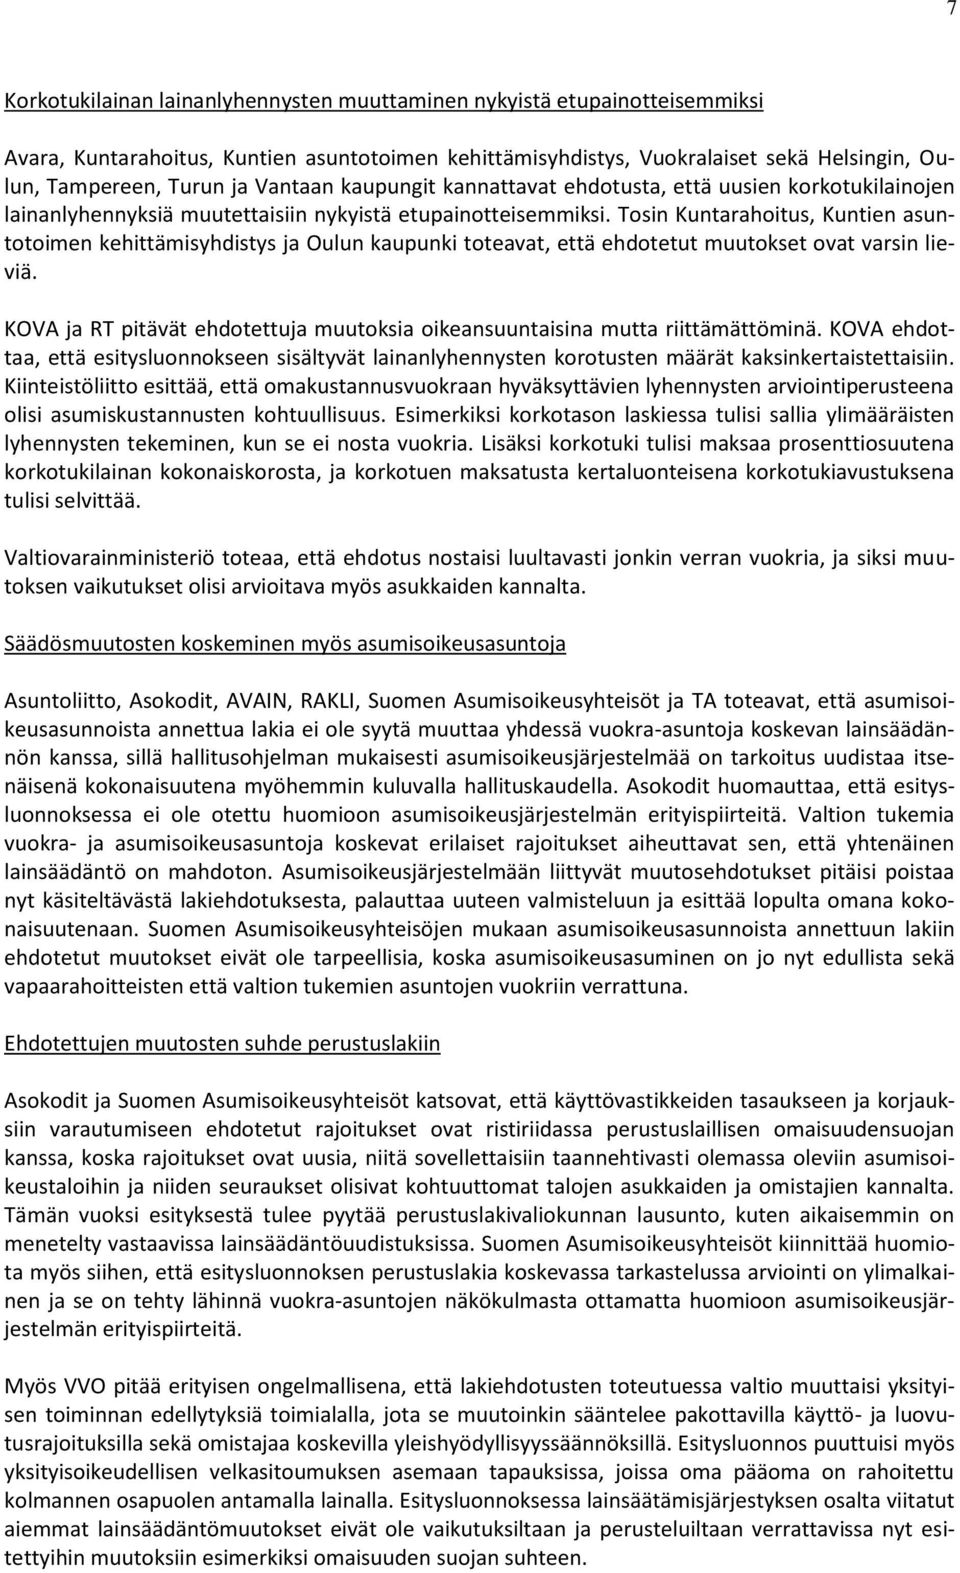 Tosin Kuntarahoitus, Kuntien asuntotoimen kehittämisyhdistys ja Oulun kaupunki toteavat, että ehdotetut muutokset ovat varsin lieviä.